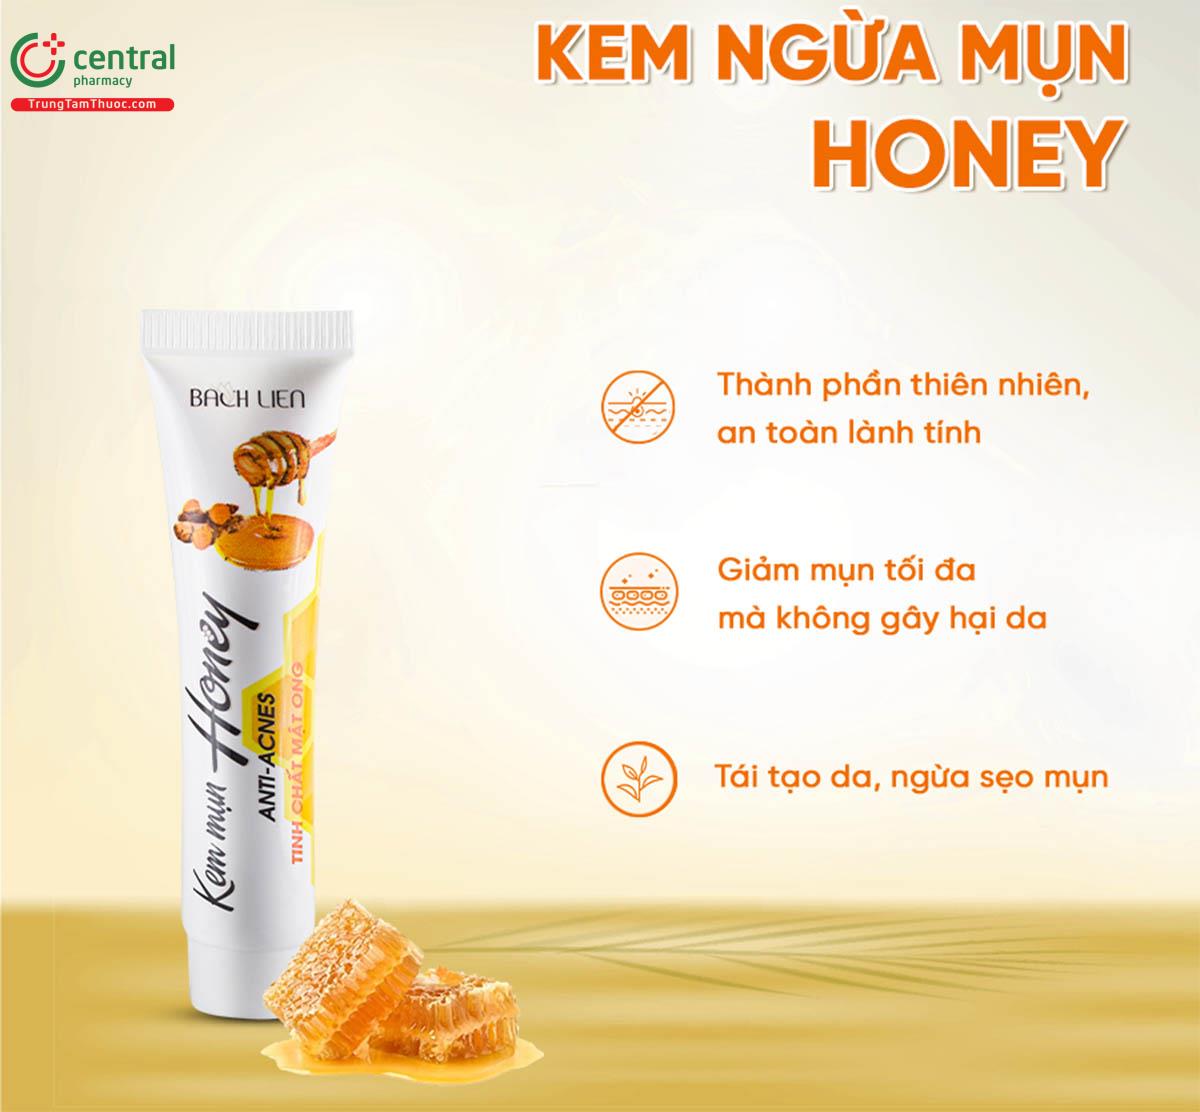 Kem ngừa mụn Honey 15g giúp giảm thâm nám da